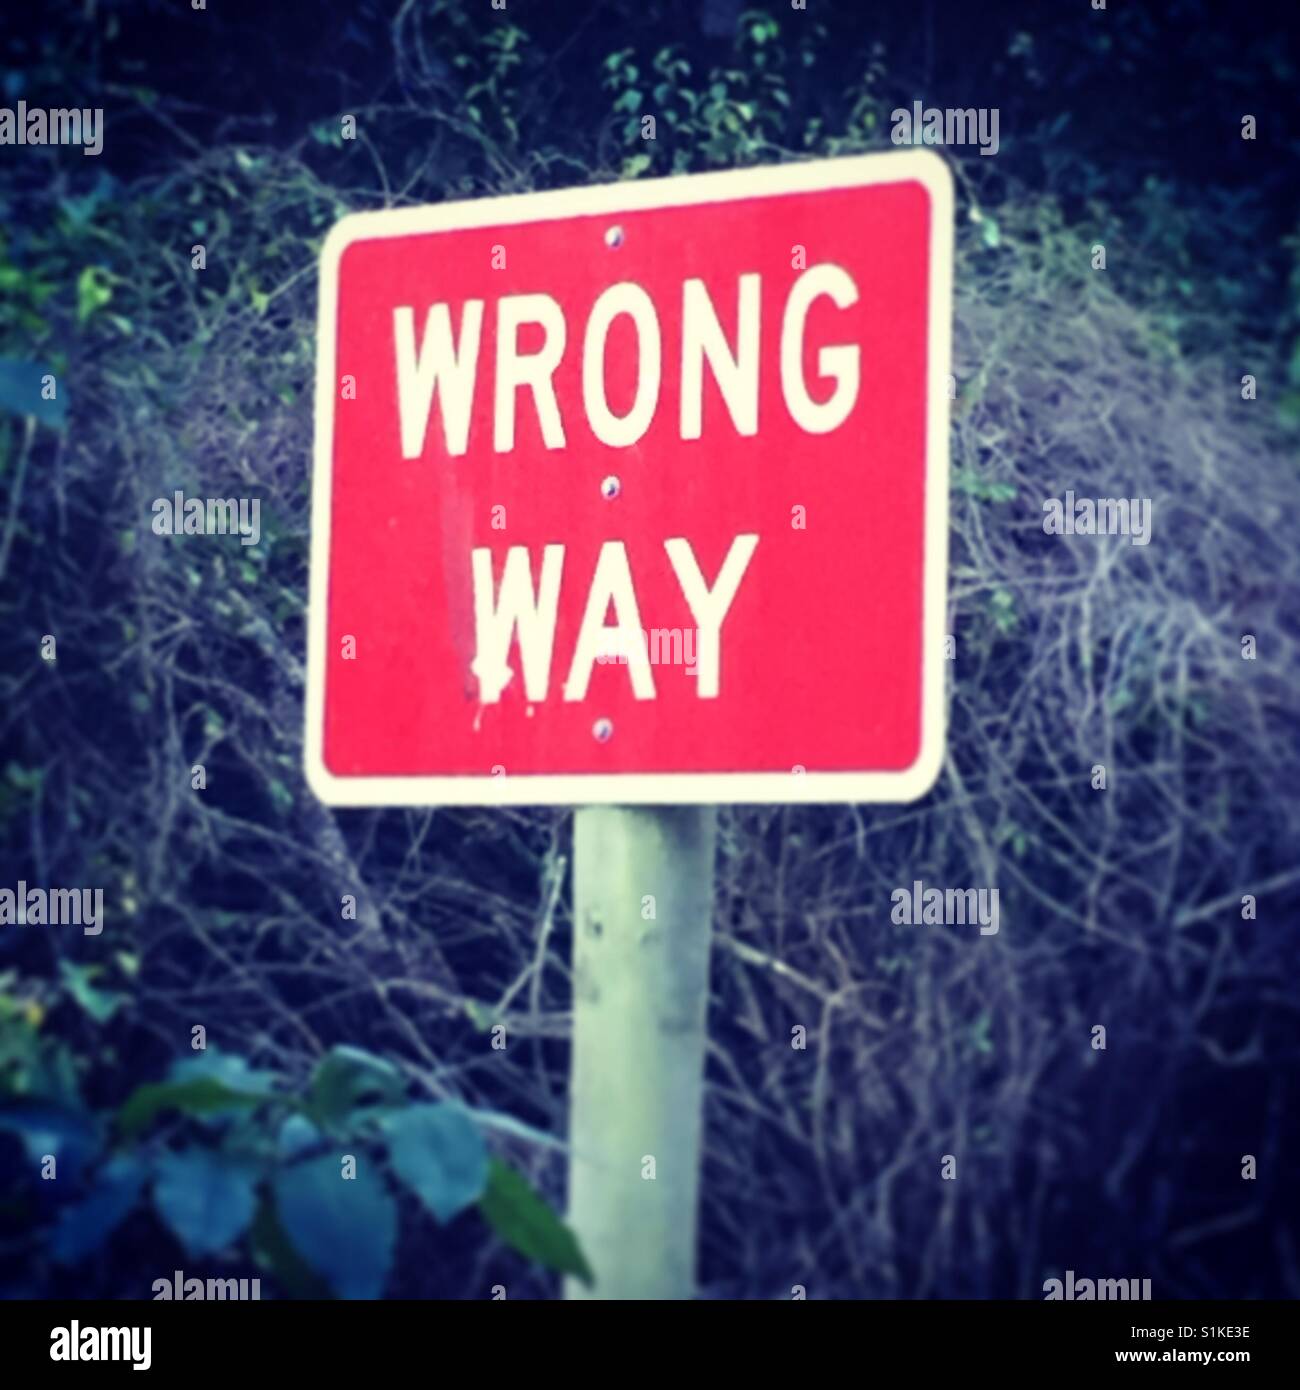 Wrong way sign Stock Photo